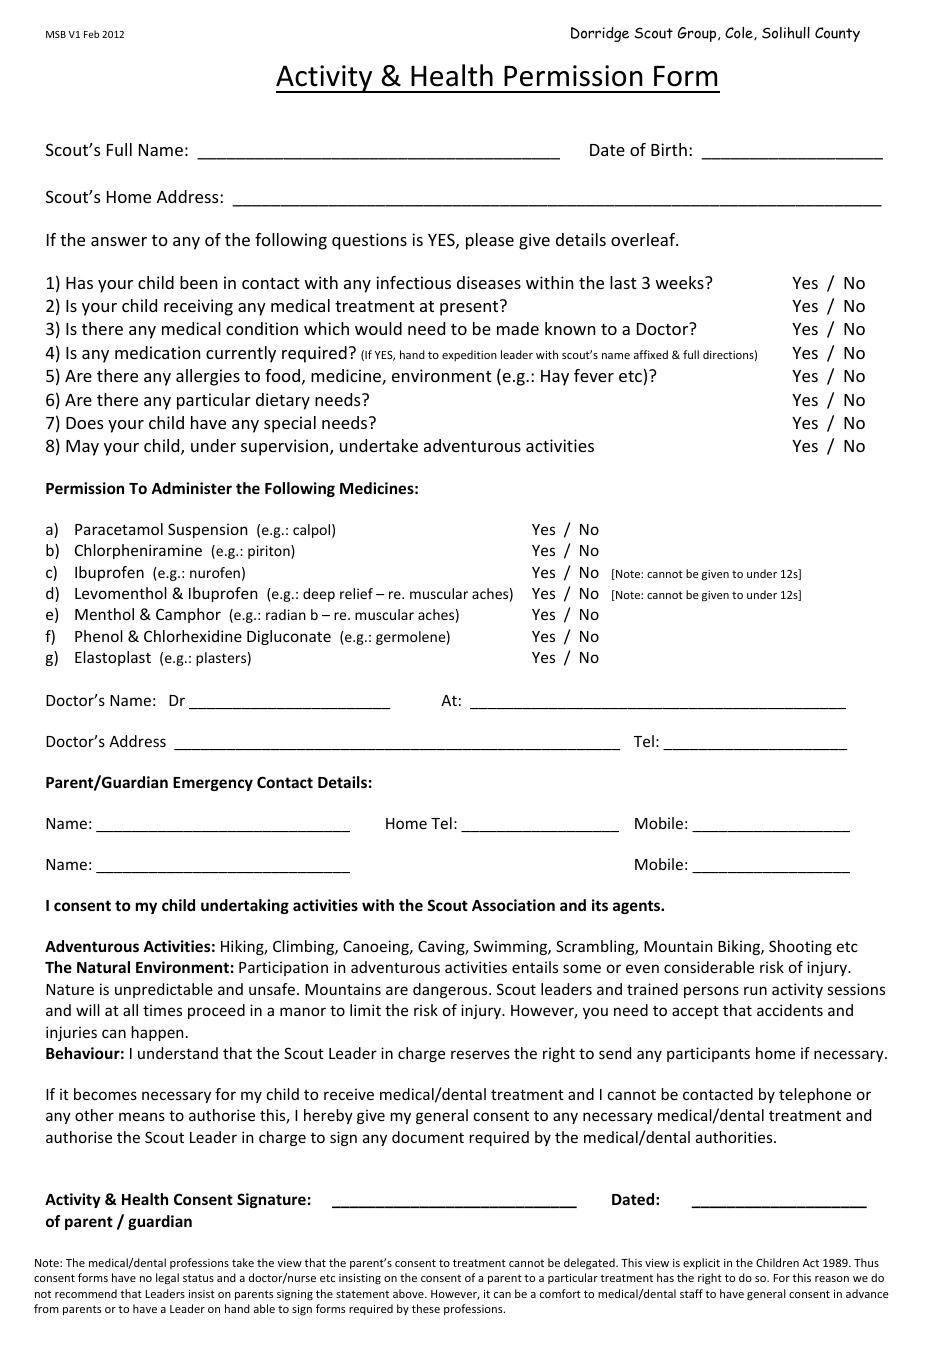 Activity  Health Permission Form - Dorridge Scout Group - West Midlands, United Kingdom, Page 1